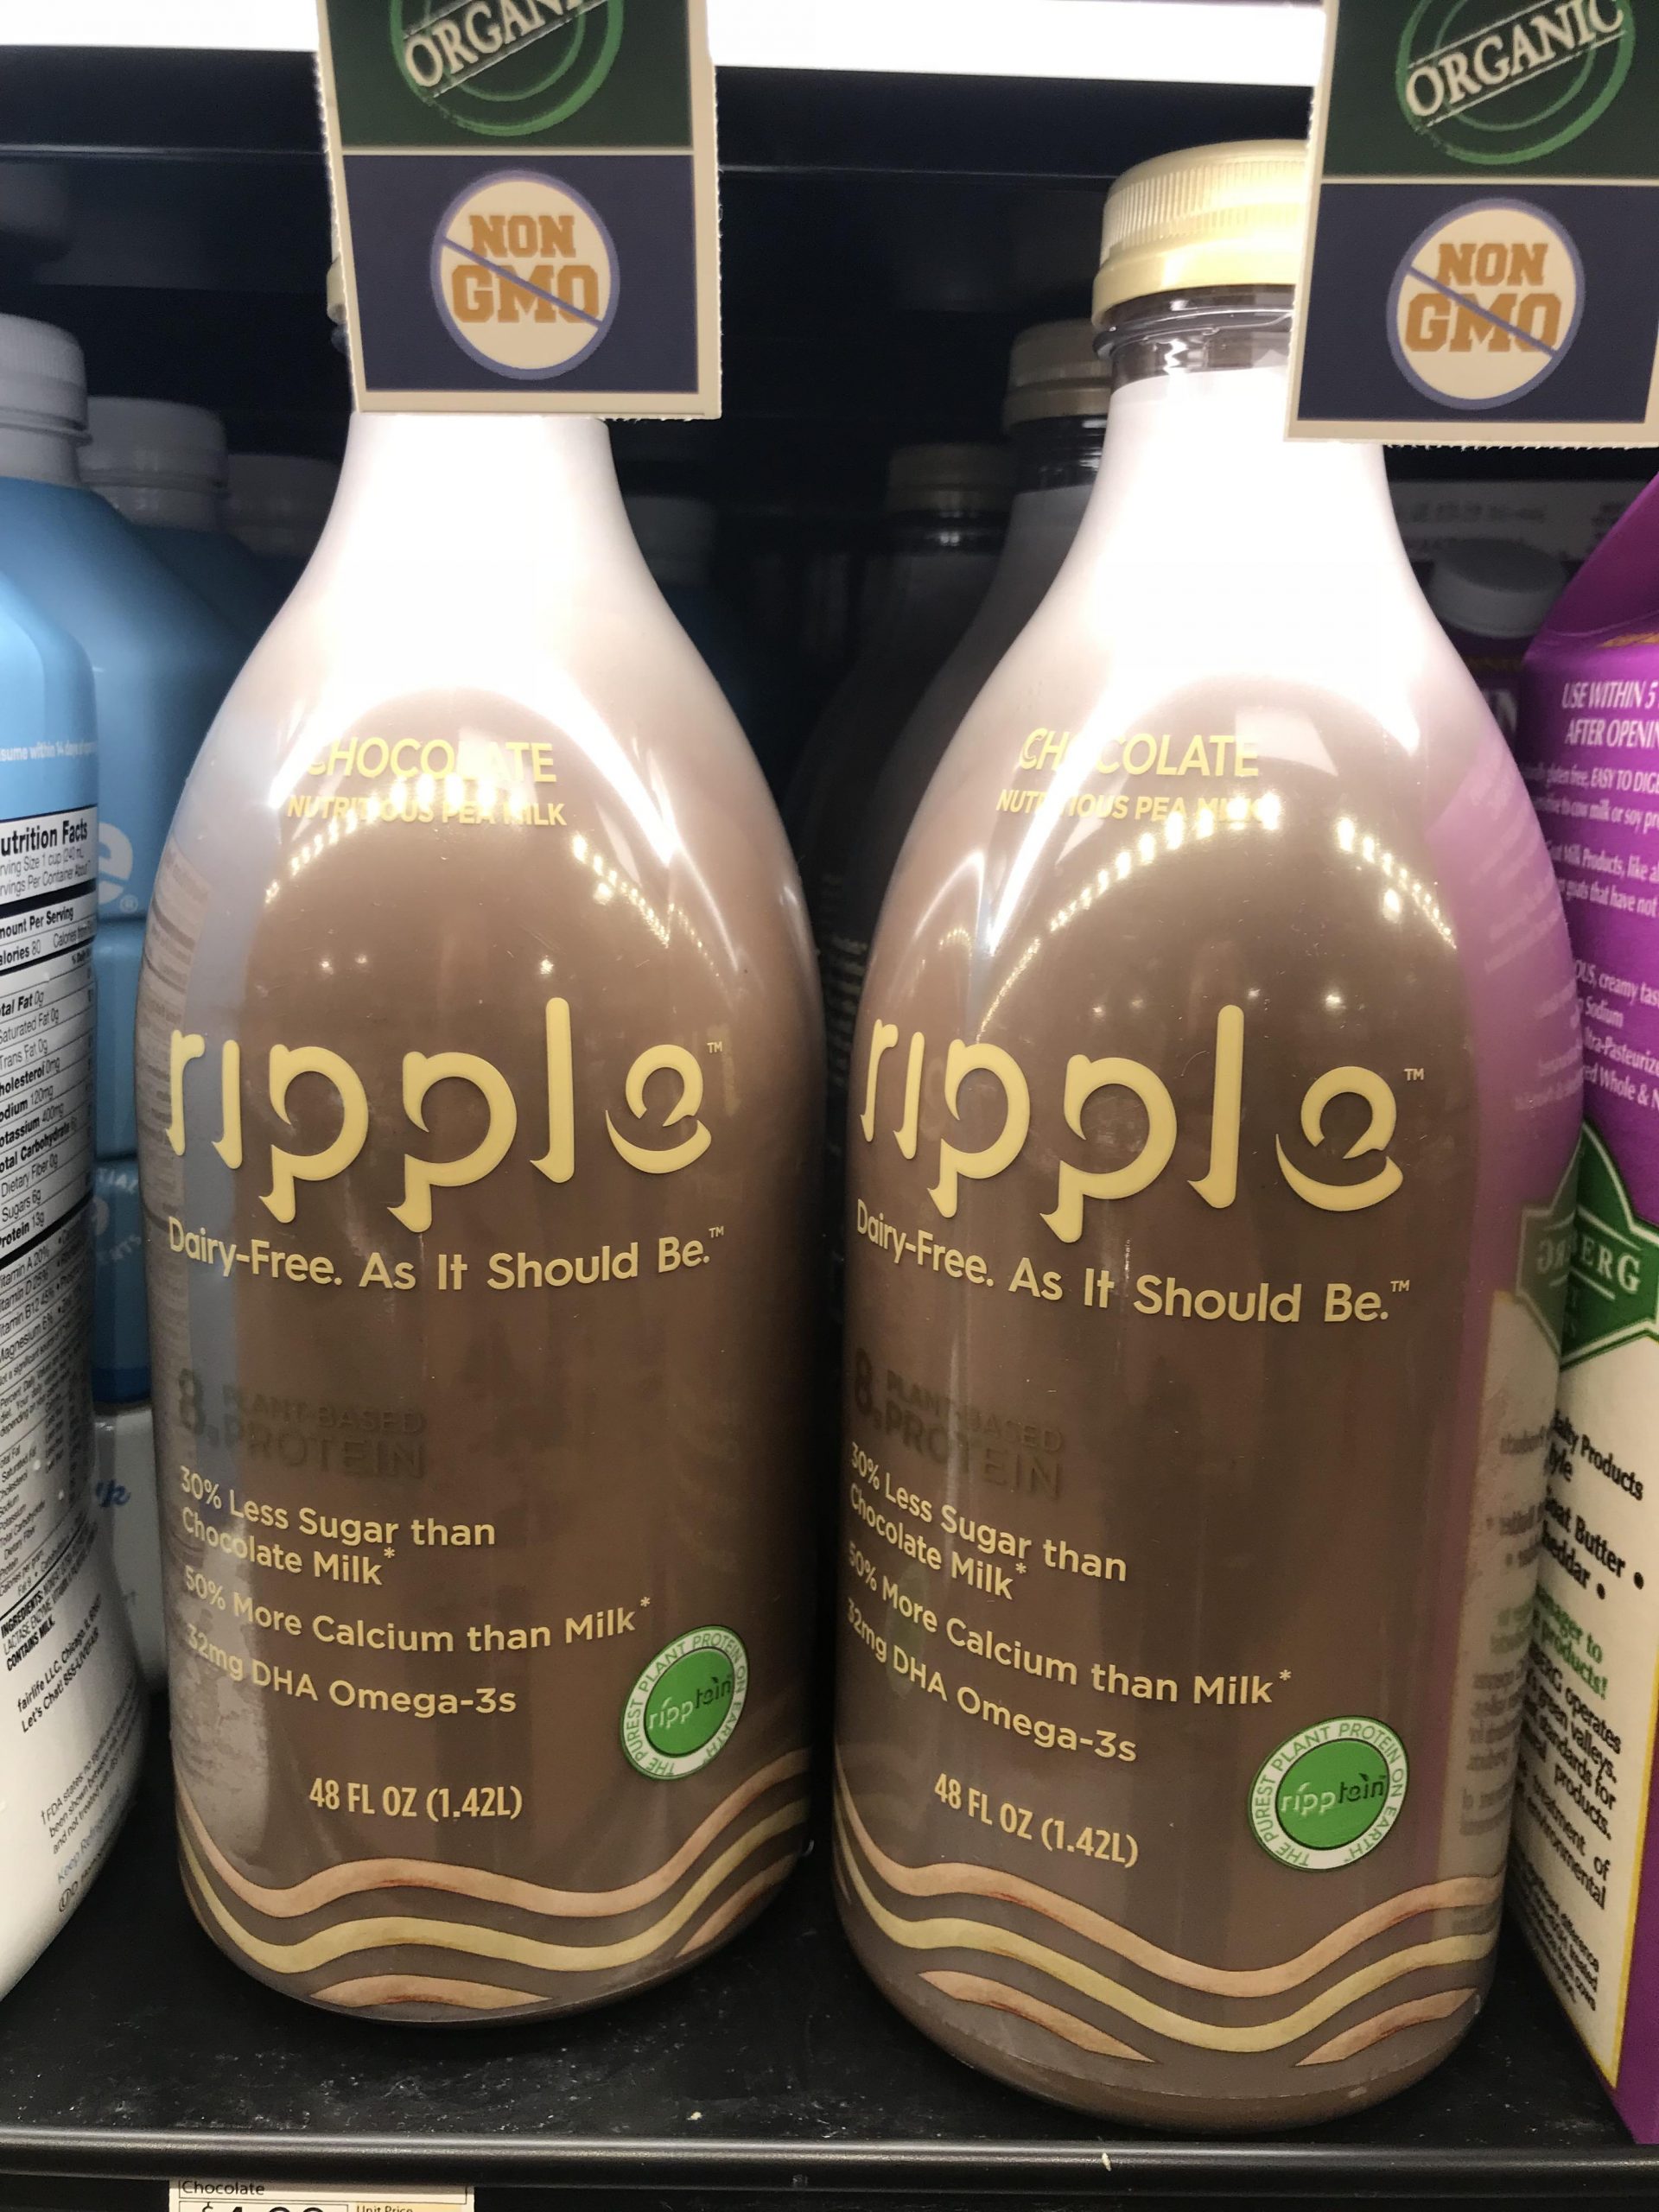 A bottle of ripple